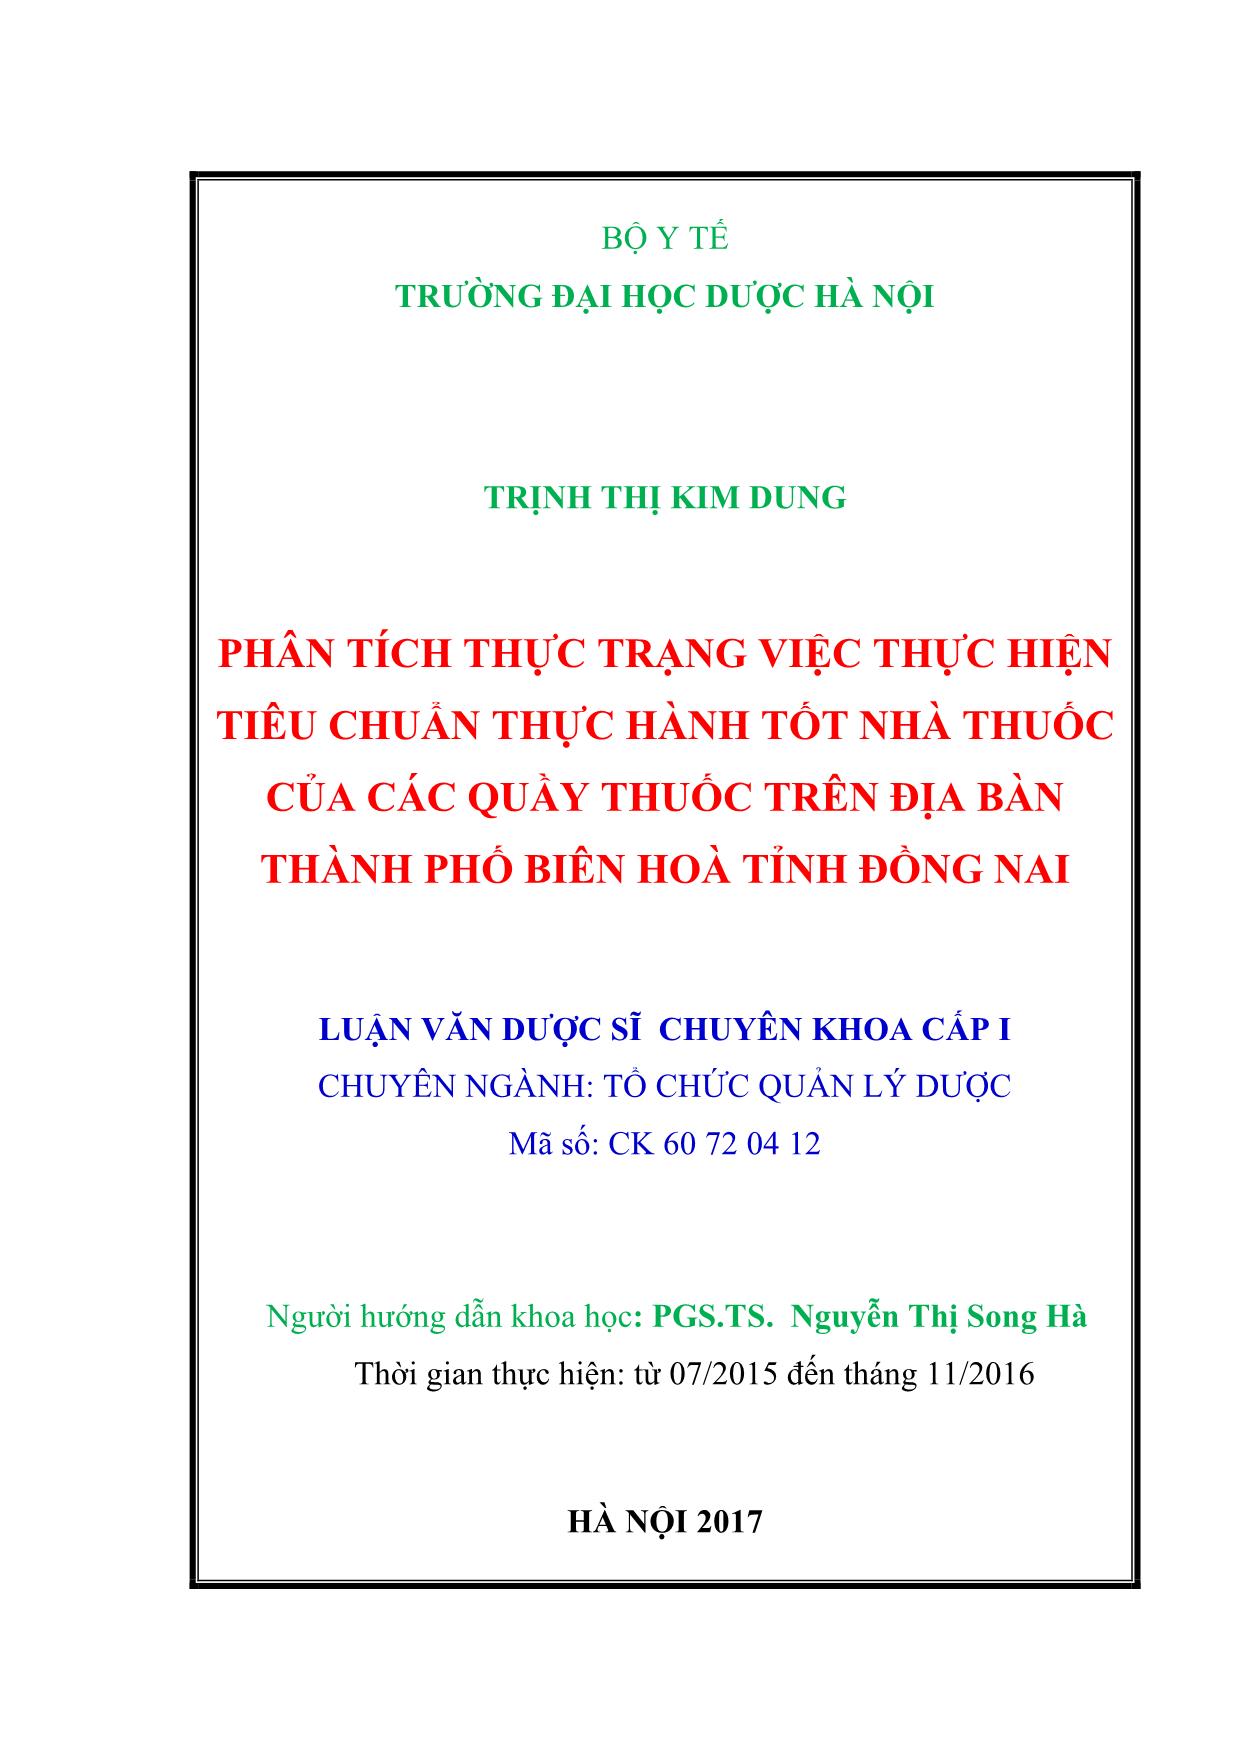 Phân tích thực trạng việc thực hiện tiêu chuẩn thực hành tốt nhà thuốc của các quầy thuốc trên địa bàn thành phố Biên hòa tỉnh Đồng Nai trang 2